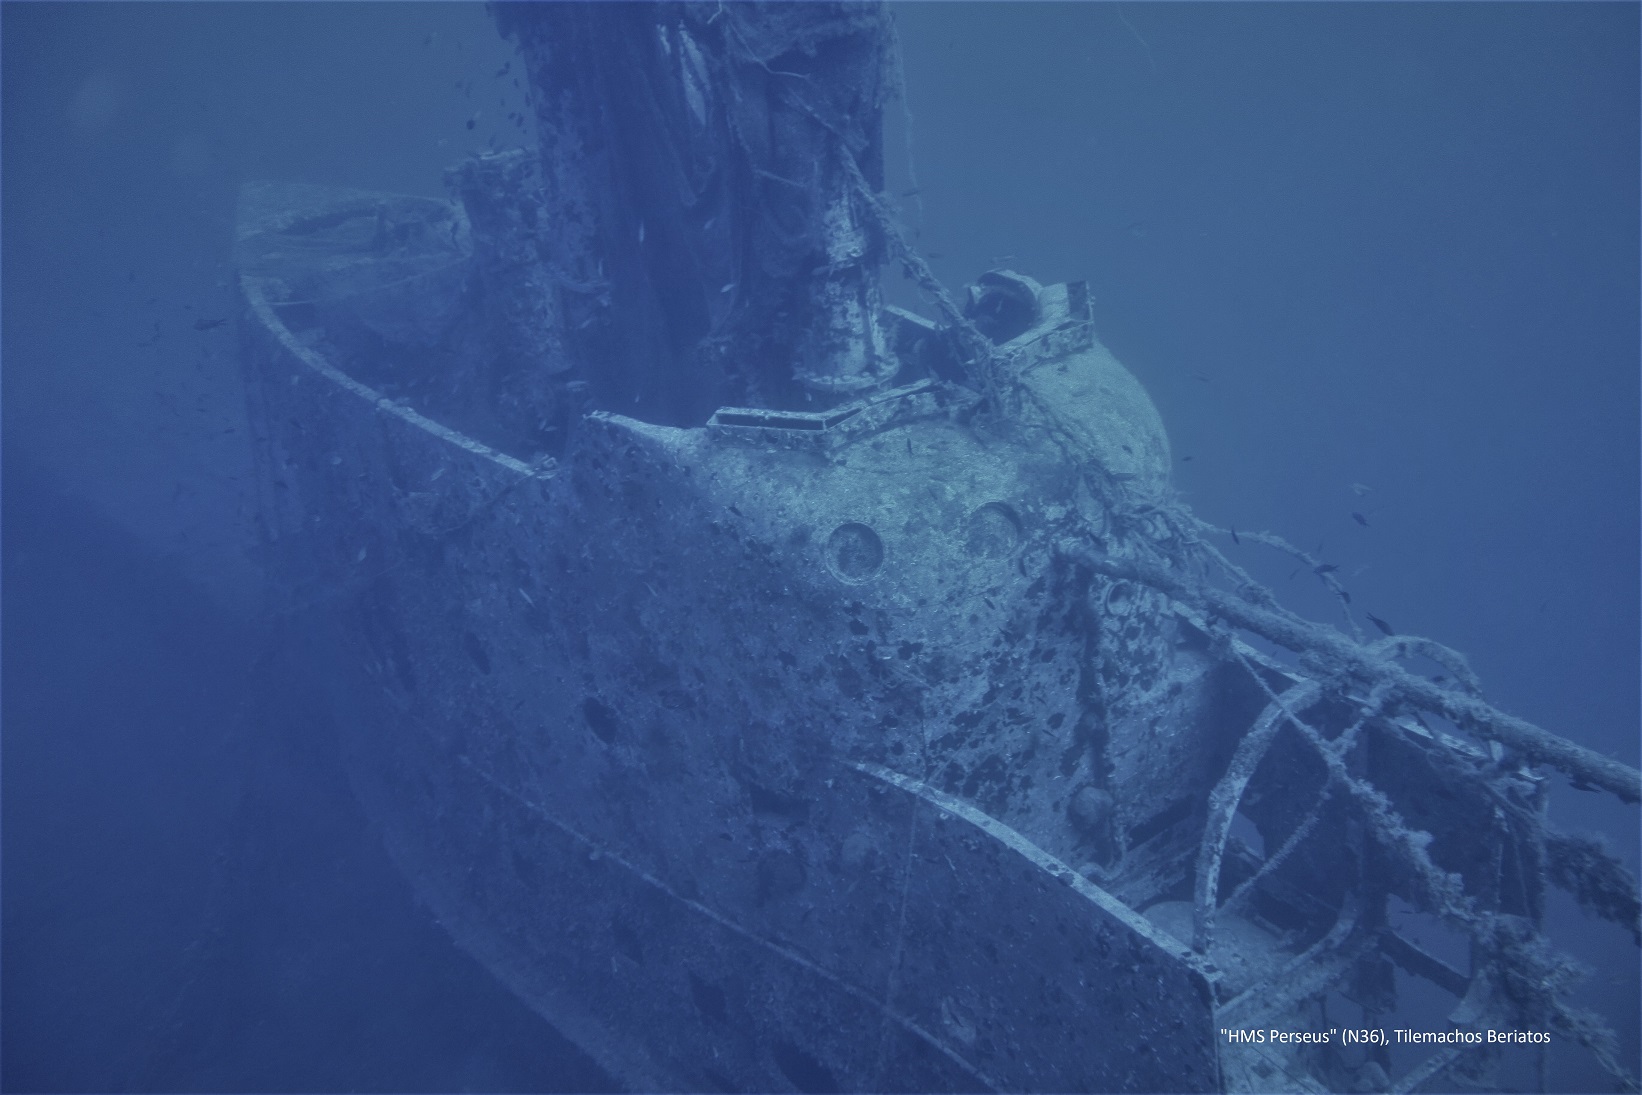 1. Υποβρύχιο HMS Perseus Κεφαλονιά φωτο Τ.Μπεριάτος 2019